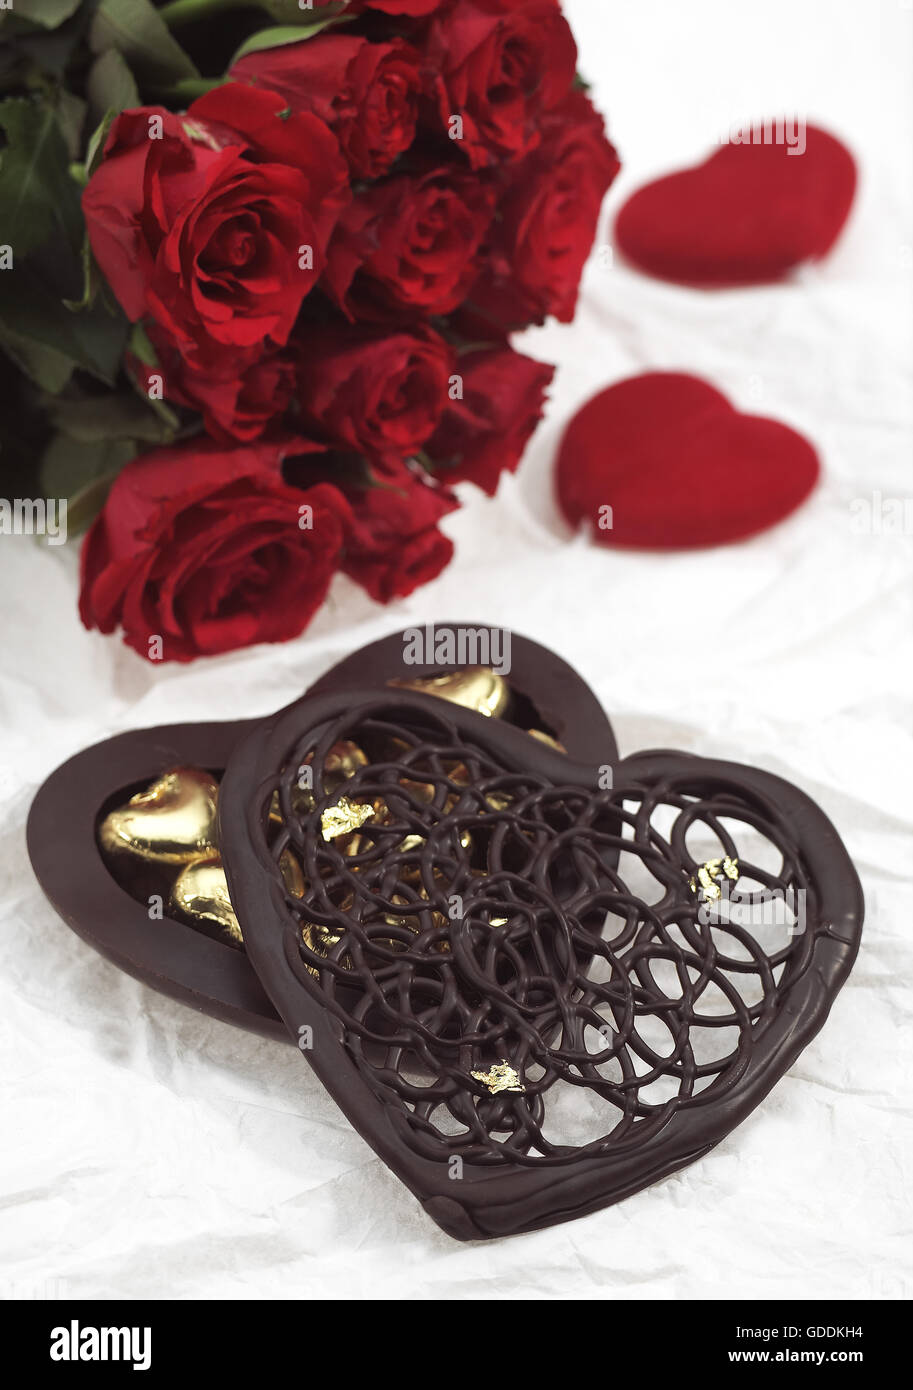 Cuore di cioccolato per il giorno di San Valentino con una rosa rossa Foto Stock